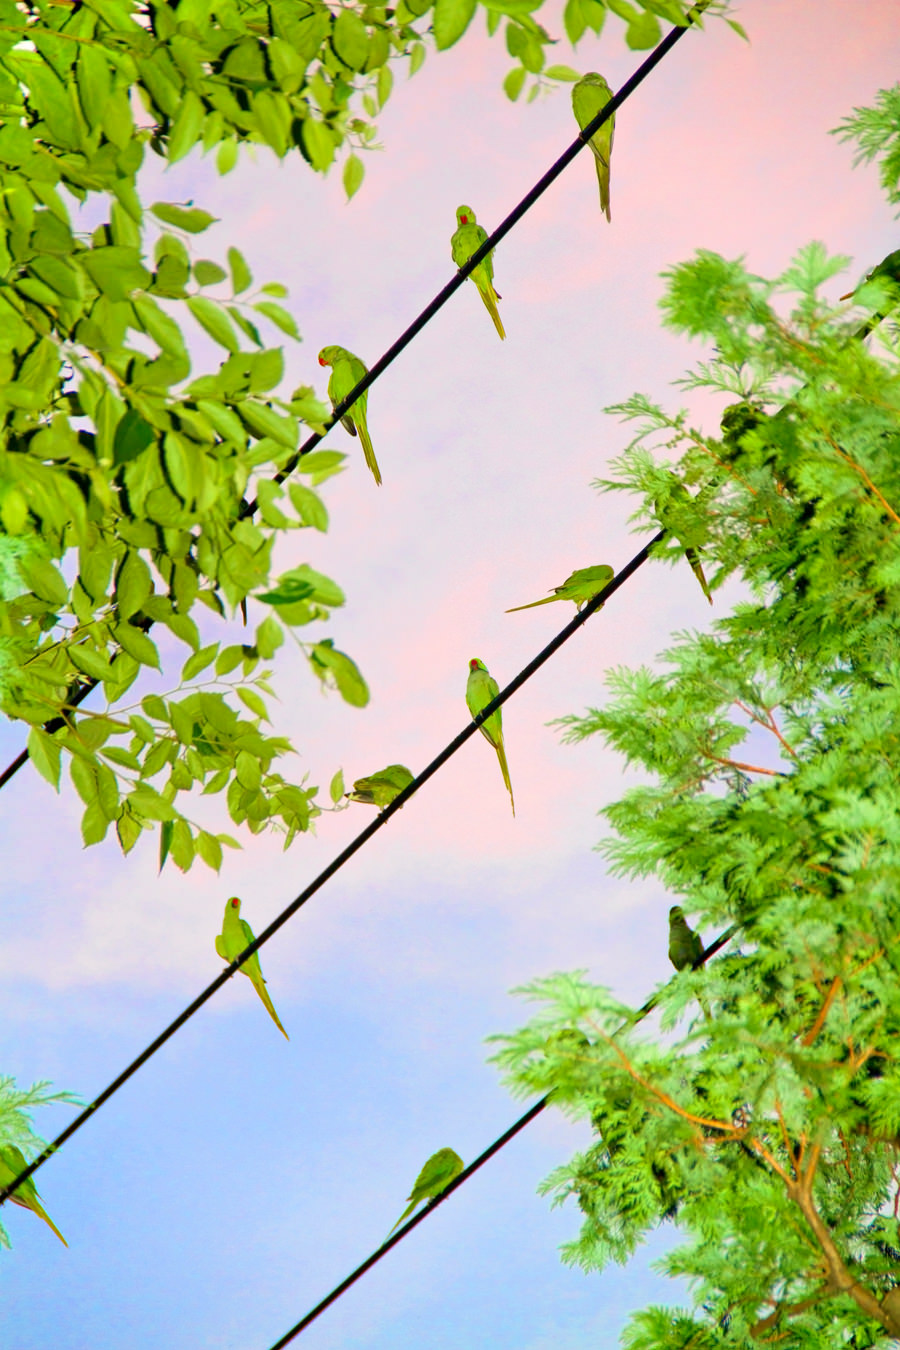 Yoshinori Mizutani, “Tokyo Parrots”, 2013, ©Yoshinori Mizutani